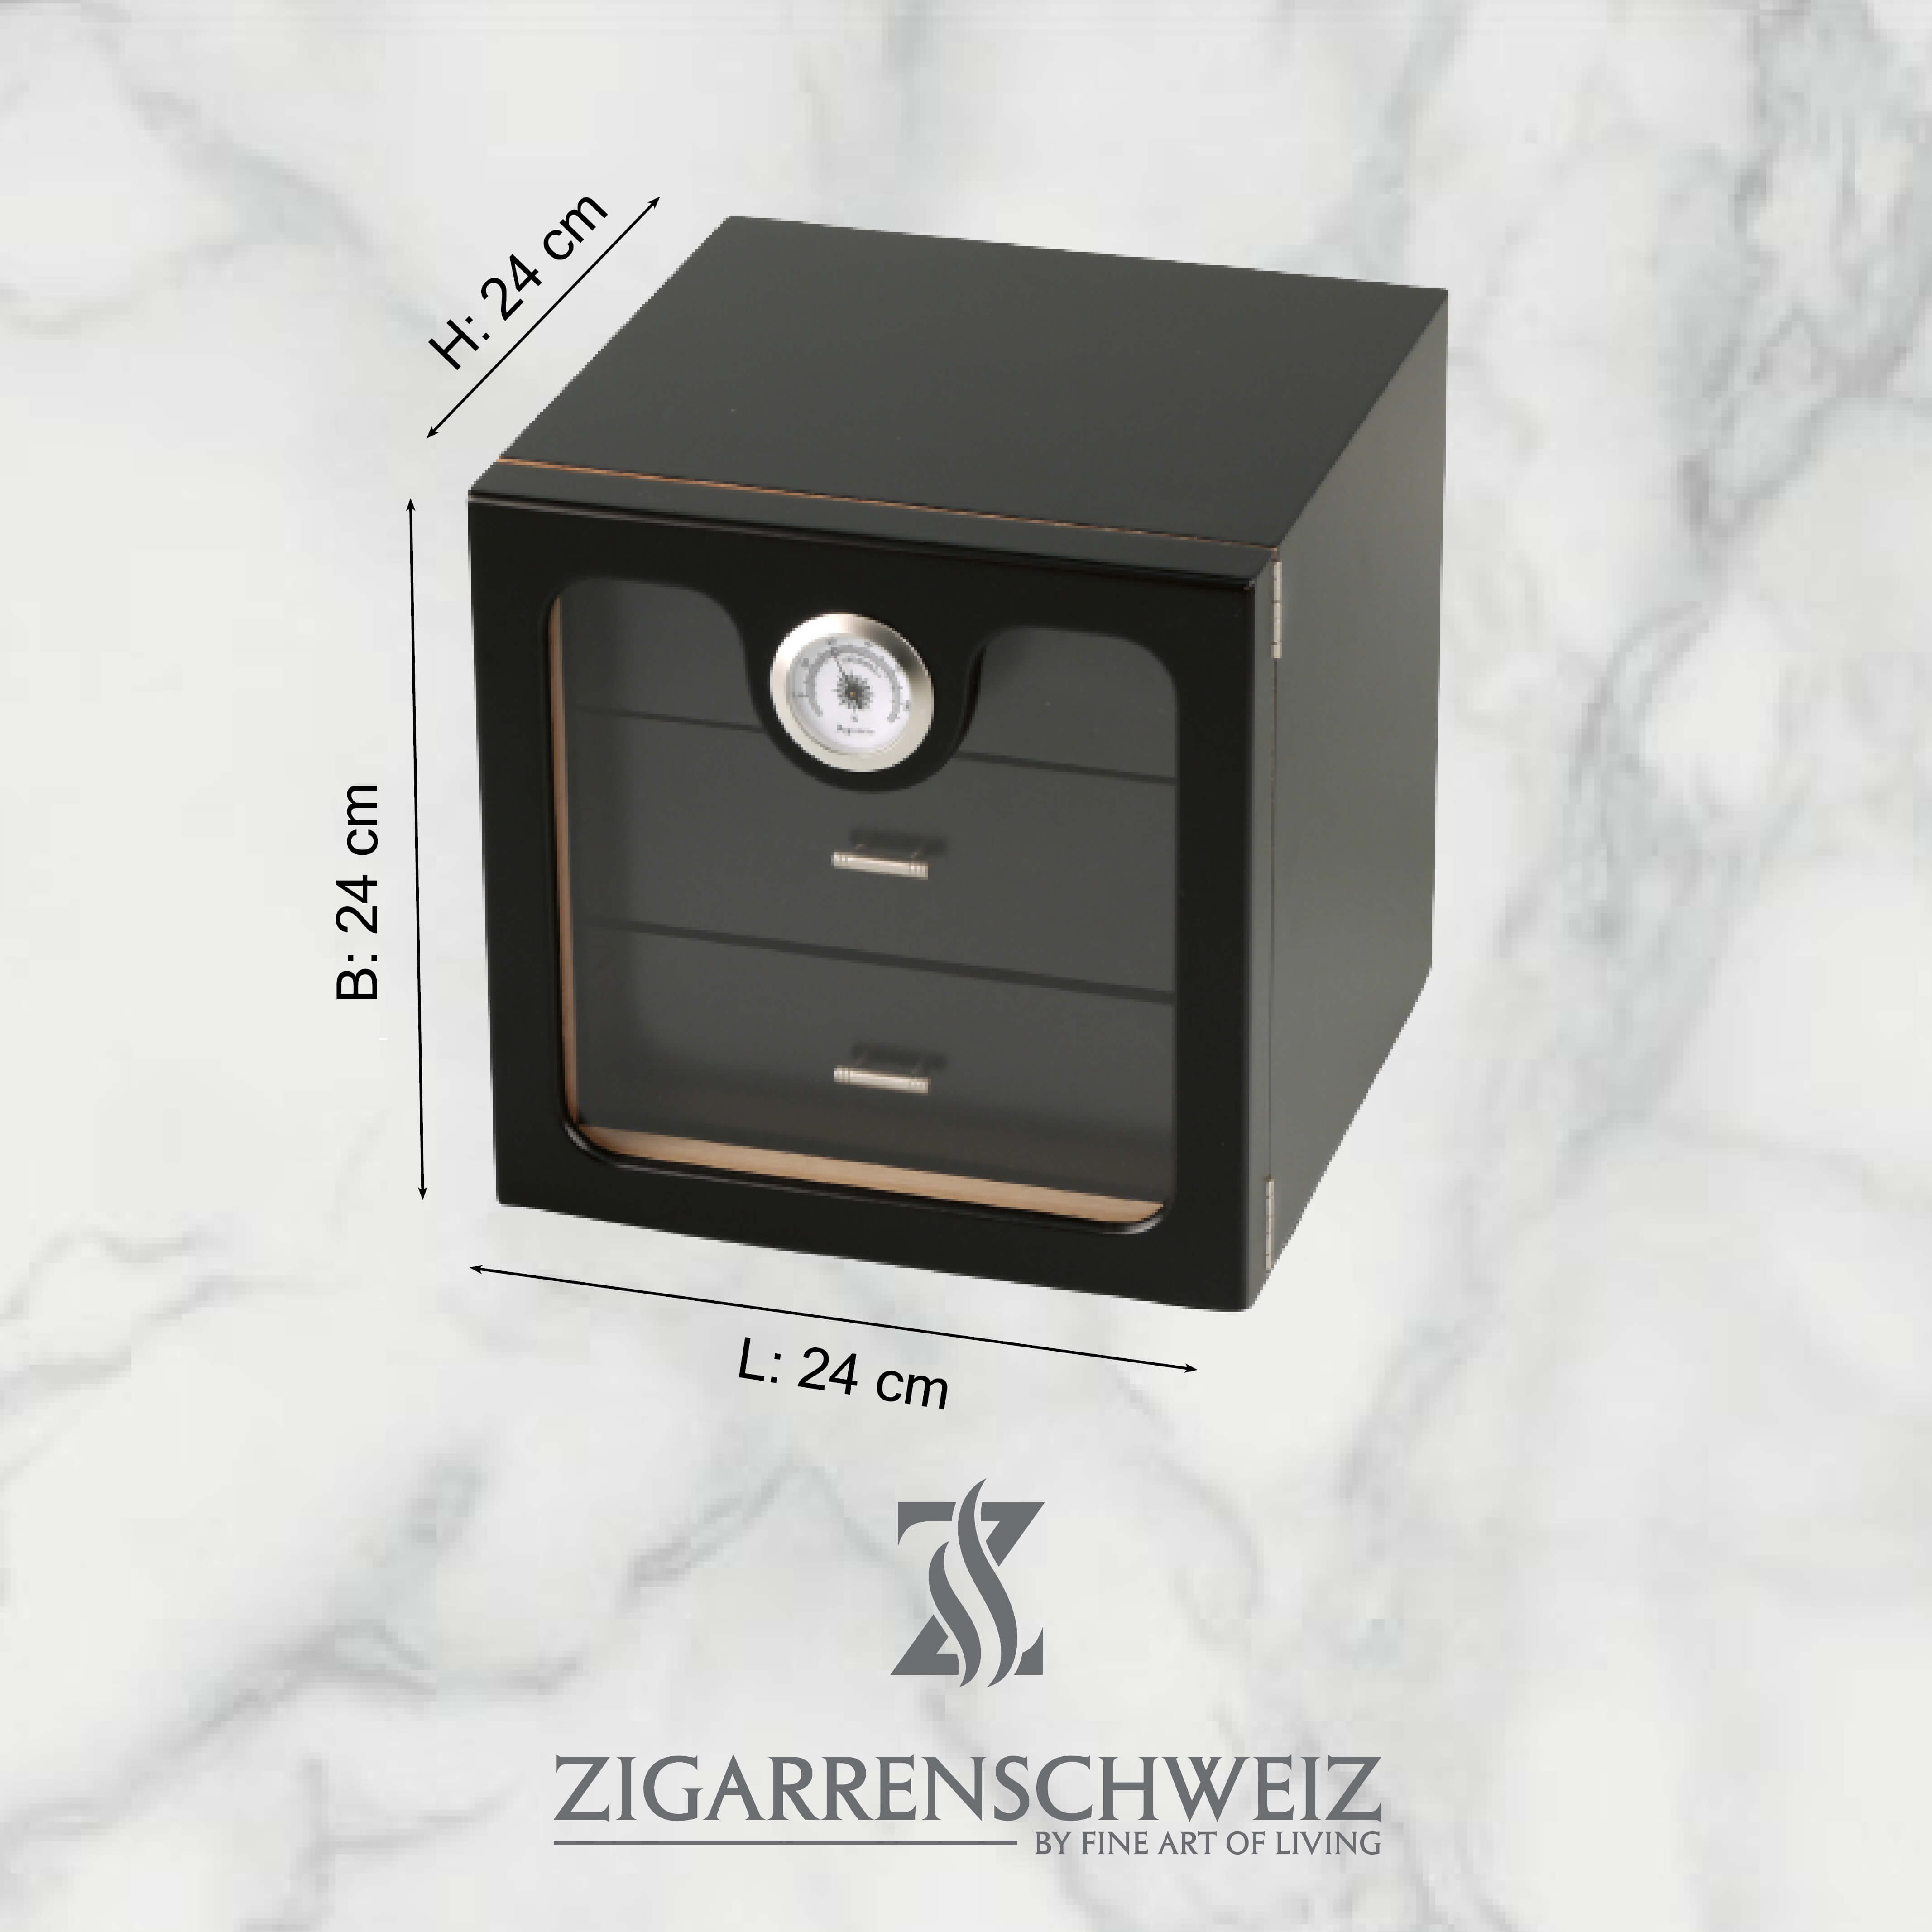 Freeline Cube Humidor, Farbe: Schwarz, Acrylglas Türe, für 50 Zigarren